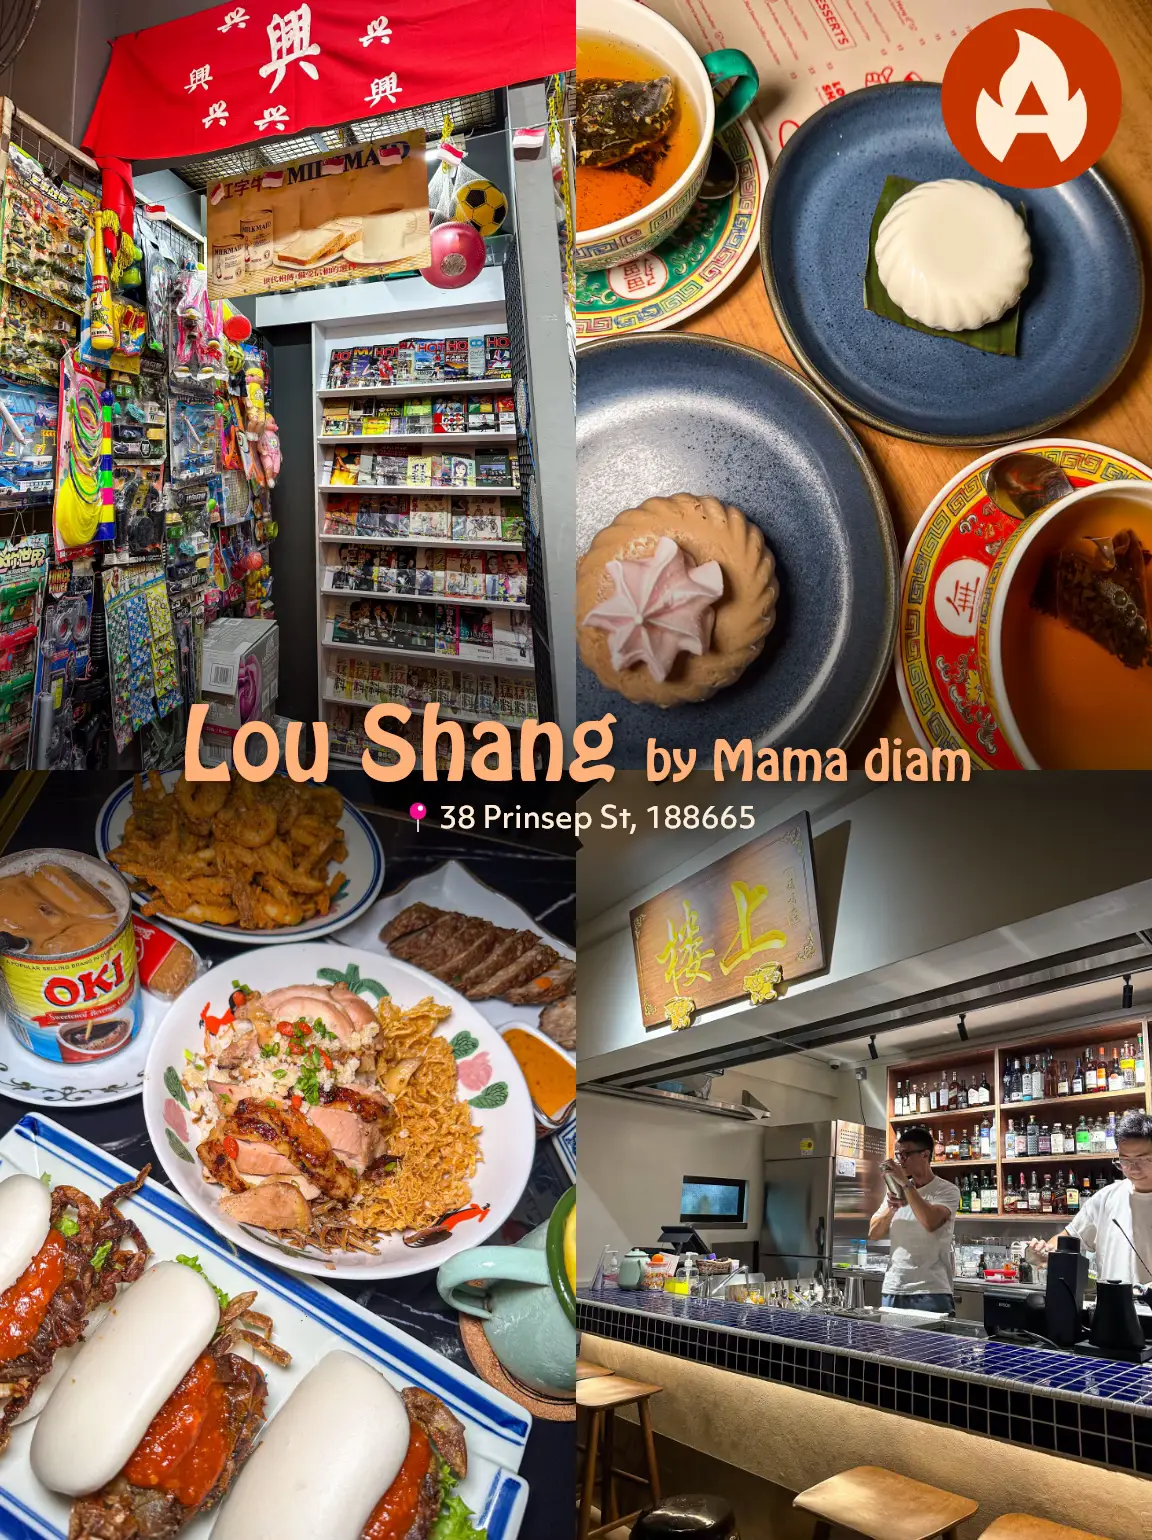 Lou Shang Cafe - Lemon8 Search